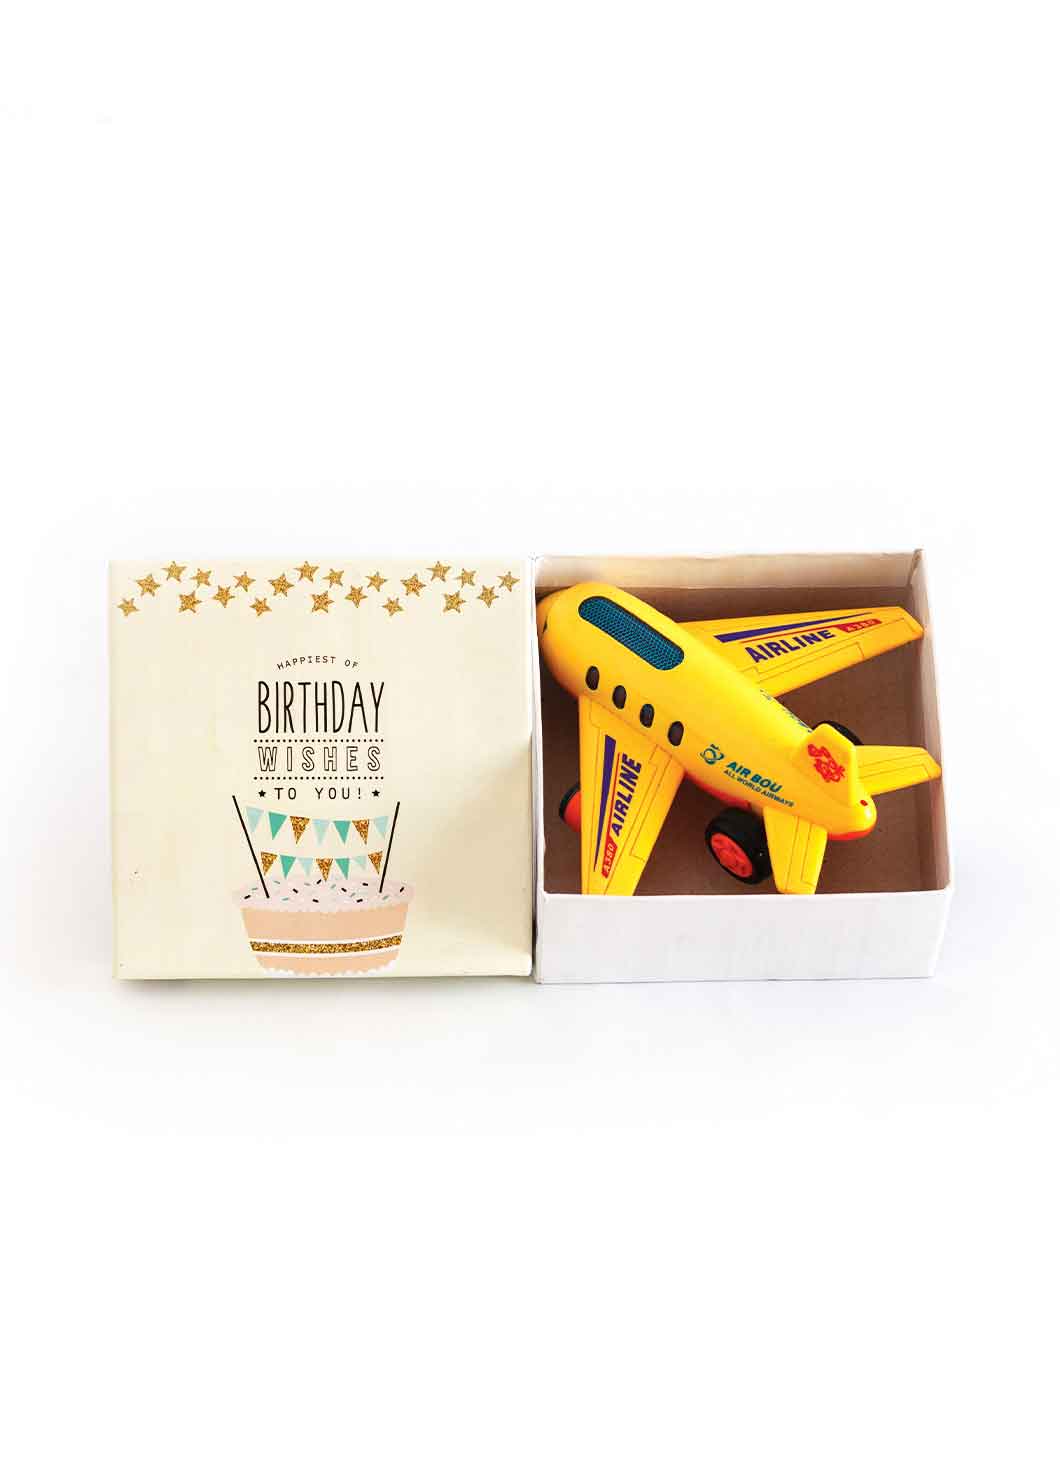 Birthday Celebration Design Box for Packing